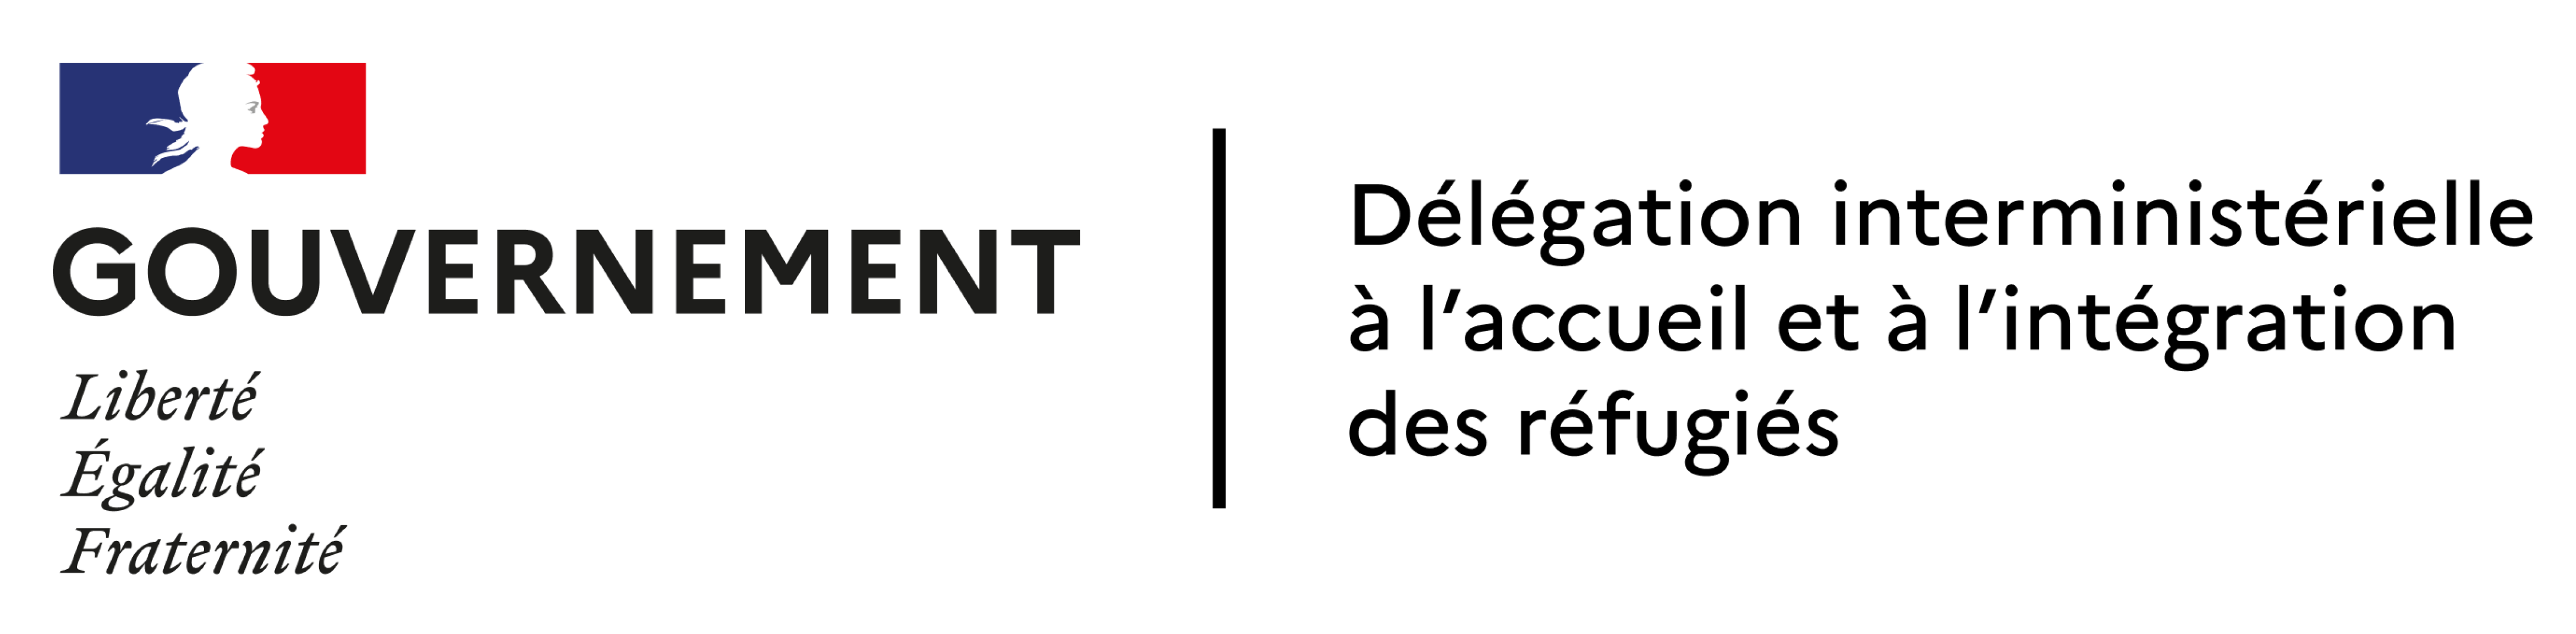 Logo Délégation interministérielle à l’accueil et à l’intégration des réfugiés